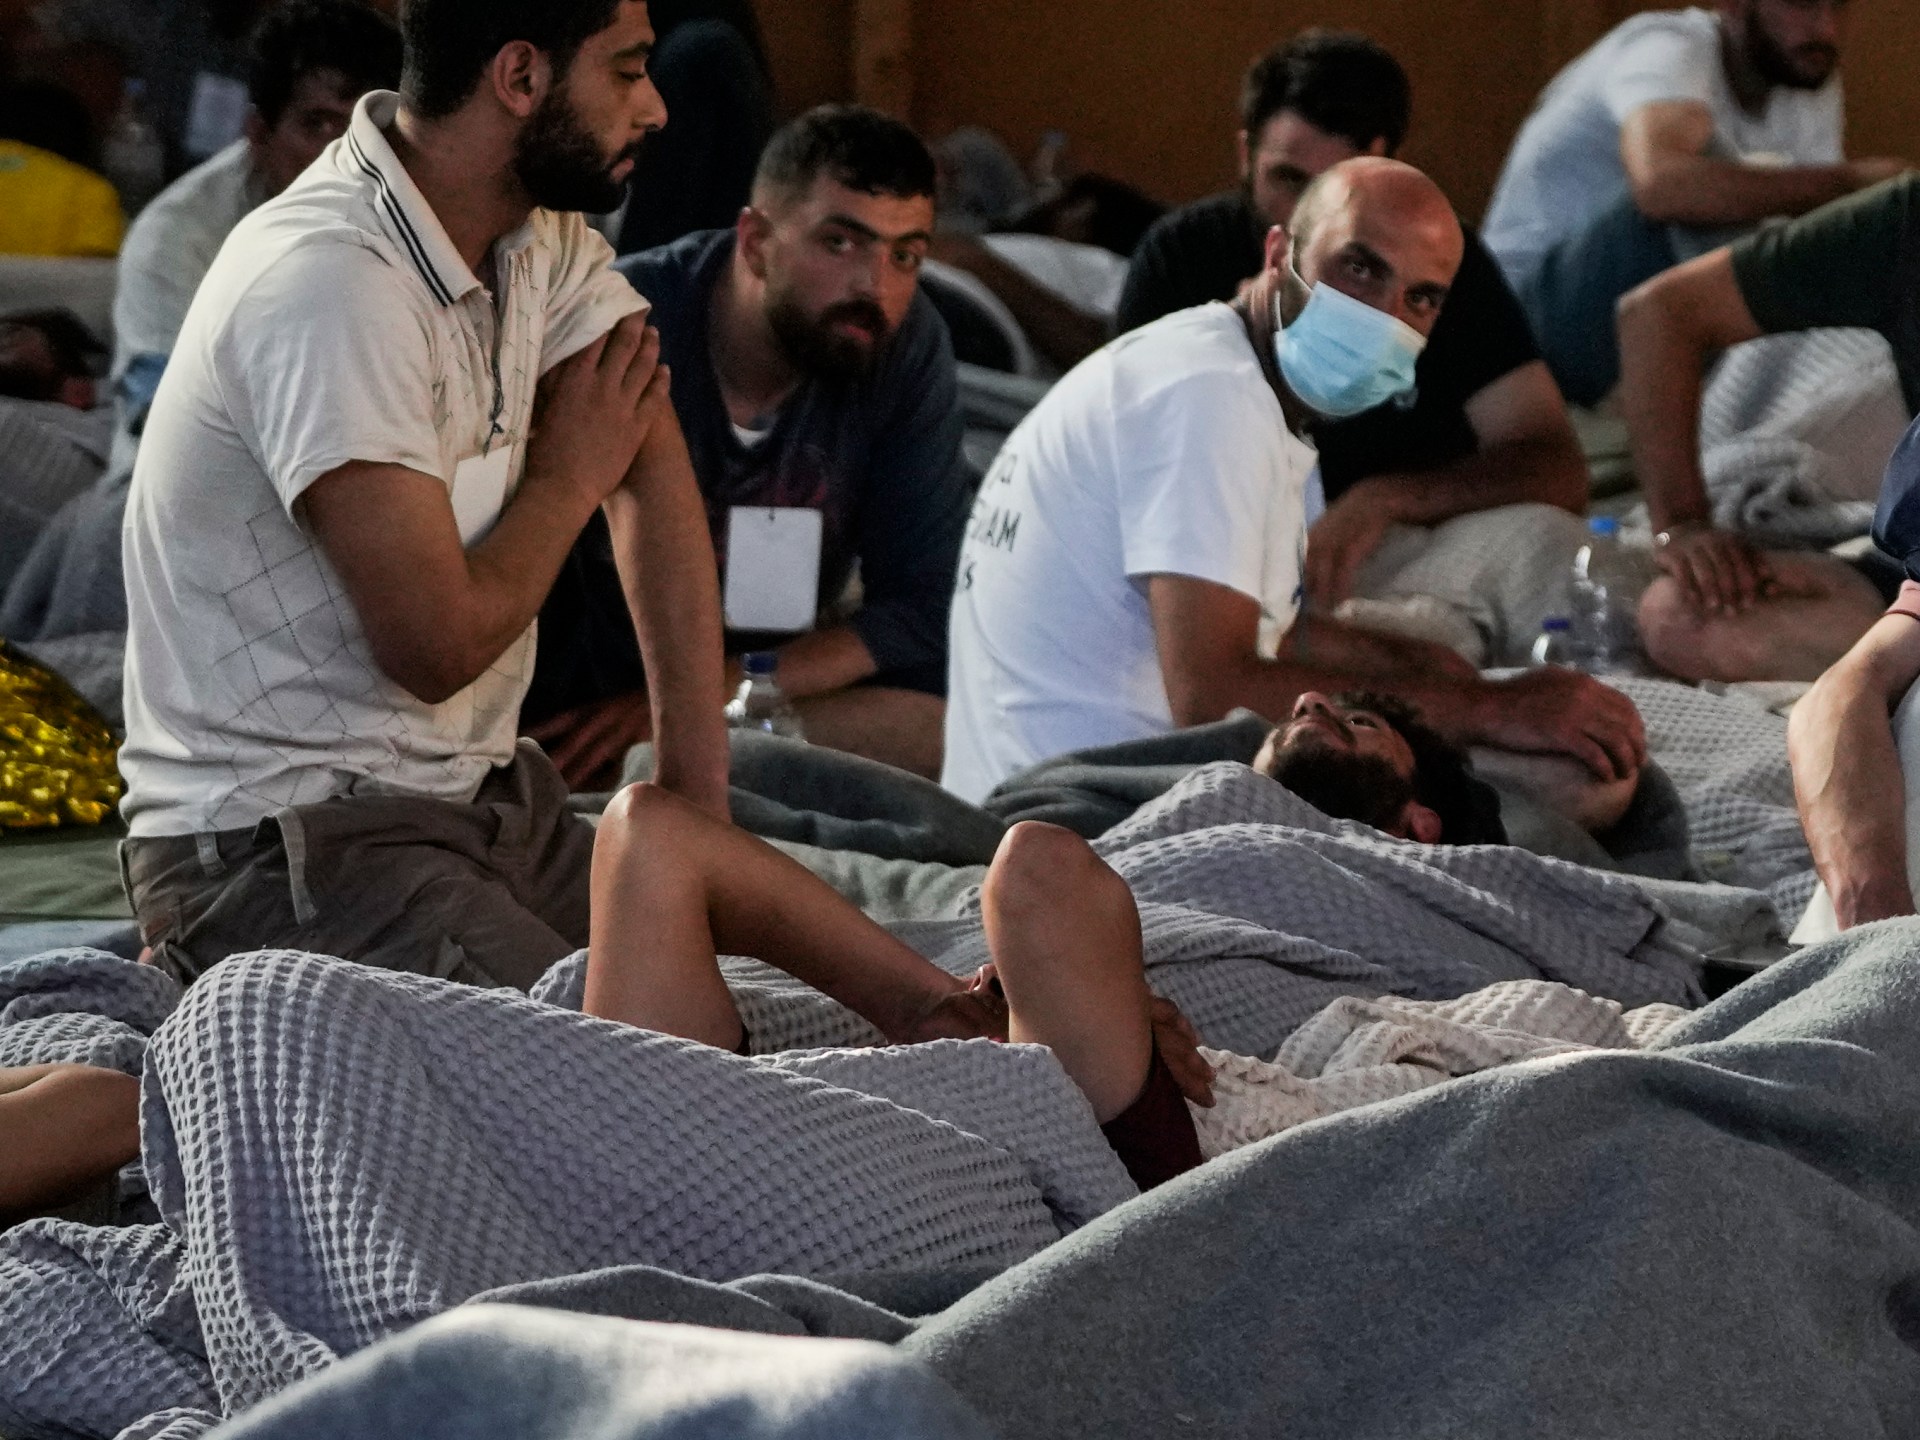 Badan-badan PBB mencari ‘tindakan tegas’ dari Uni Eropa setelah tragedi Yunani |  Berita Pengungsi